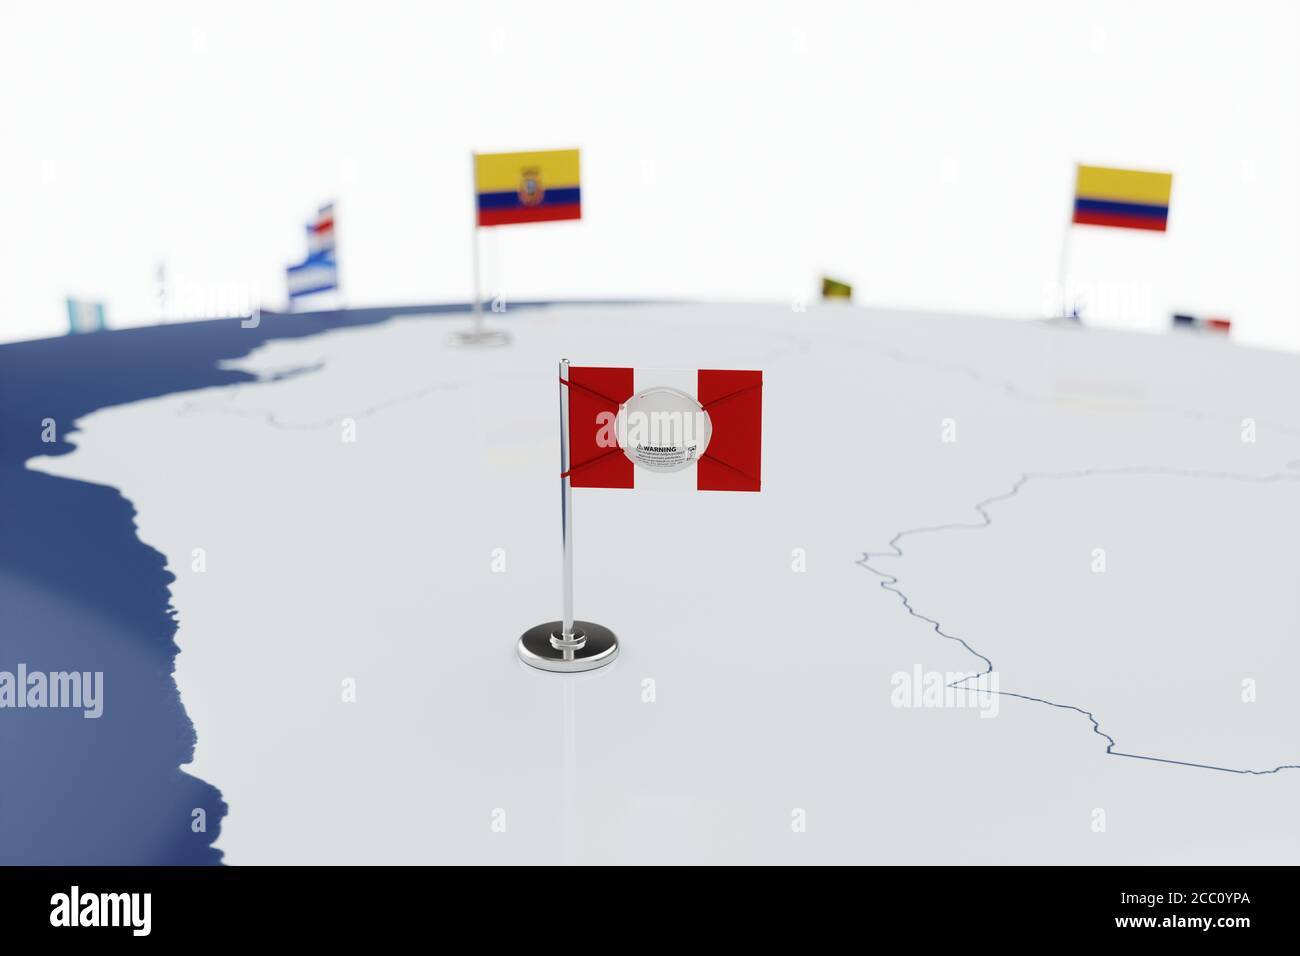 Coronavirus médical masque chirurgical sur le drapeau national péruvien. Maladie, pandémie, virus covid-19 au Pérou, concept 3d rendu illustration Banque D'Images